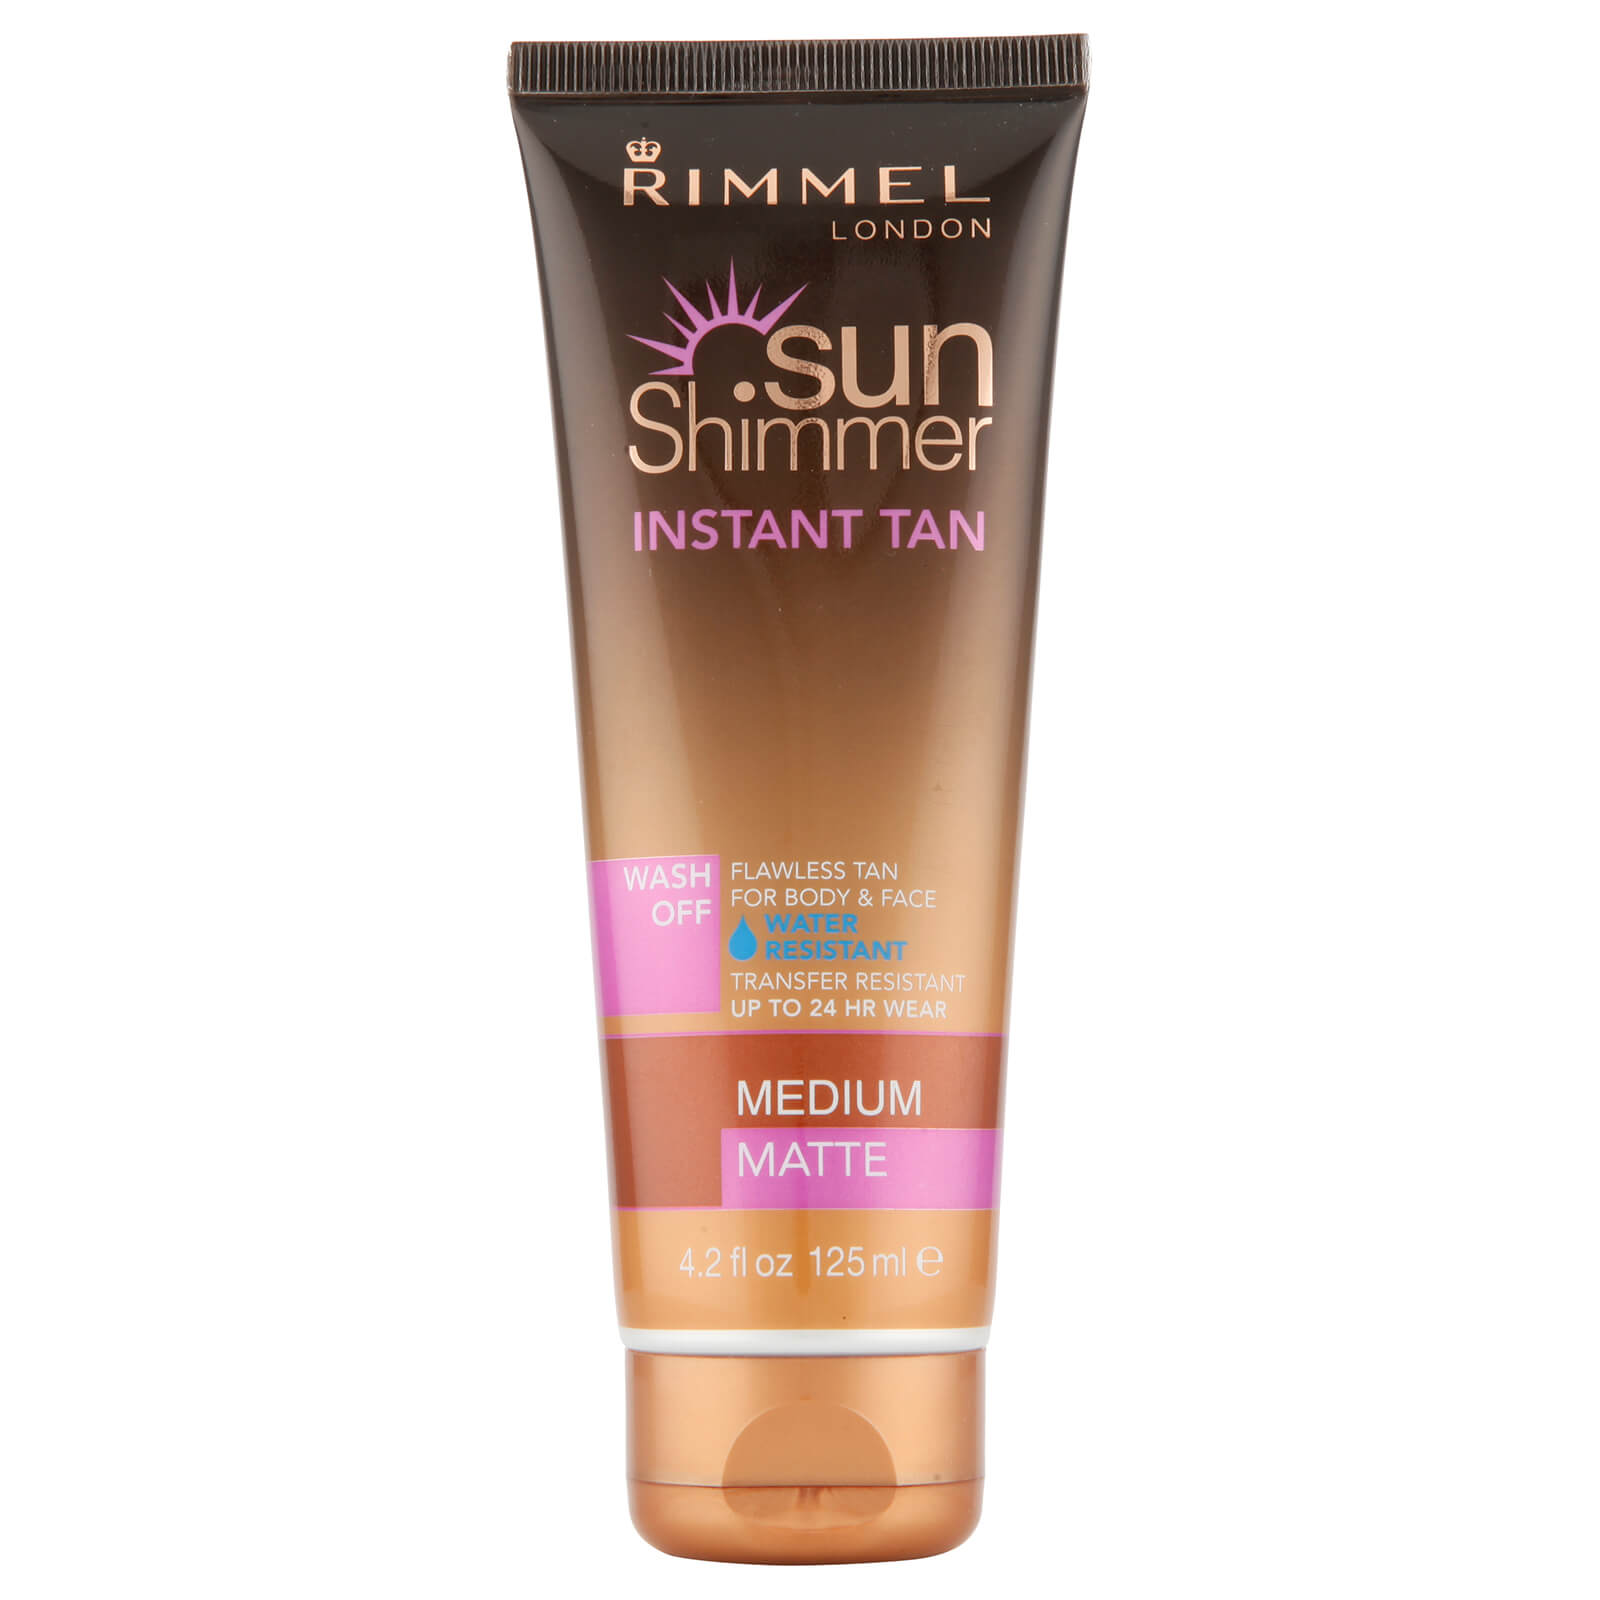 Rimmel Sunshimmer Water Resistant Wash Off Instant Tan - Matte (125ml) - 1 Medium Matte